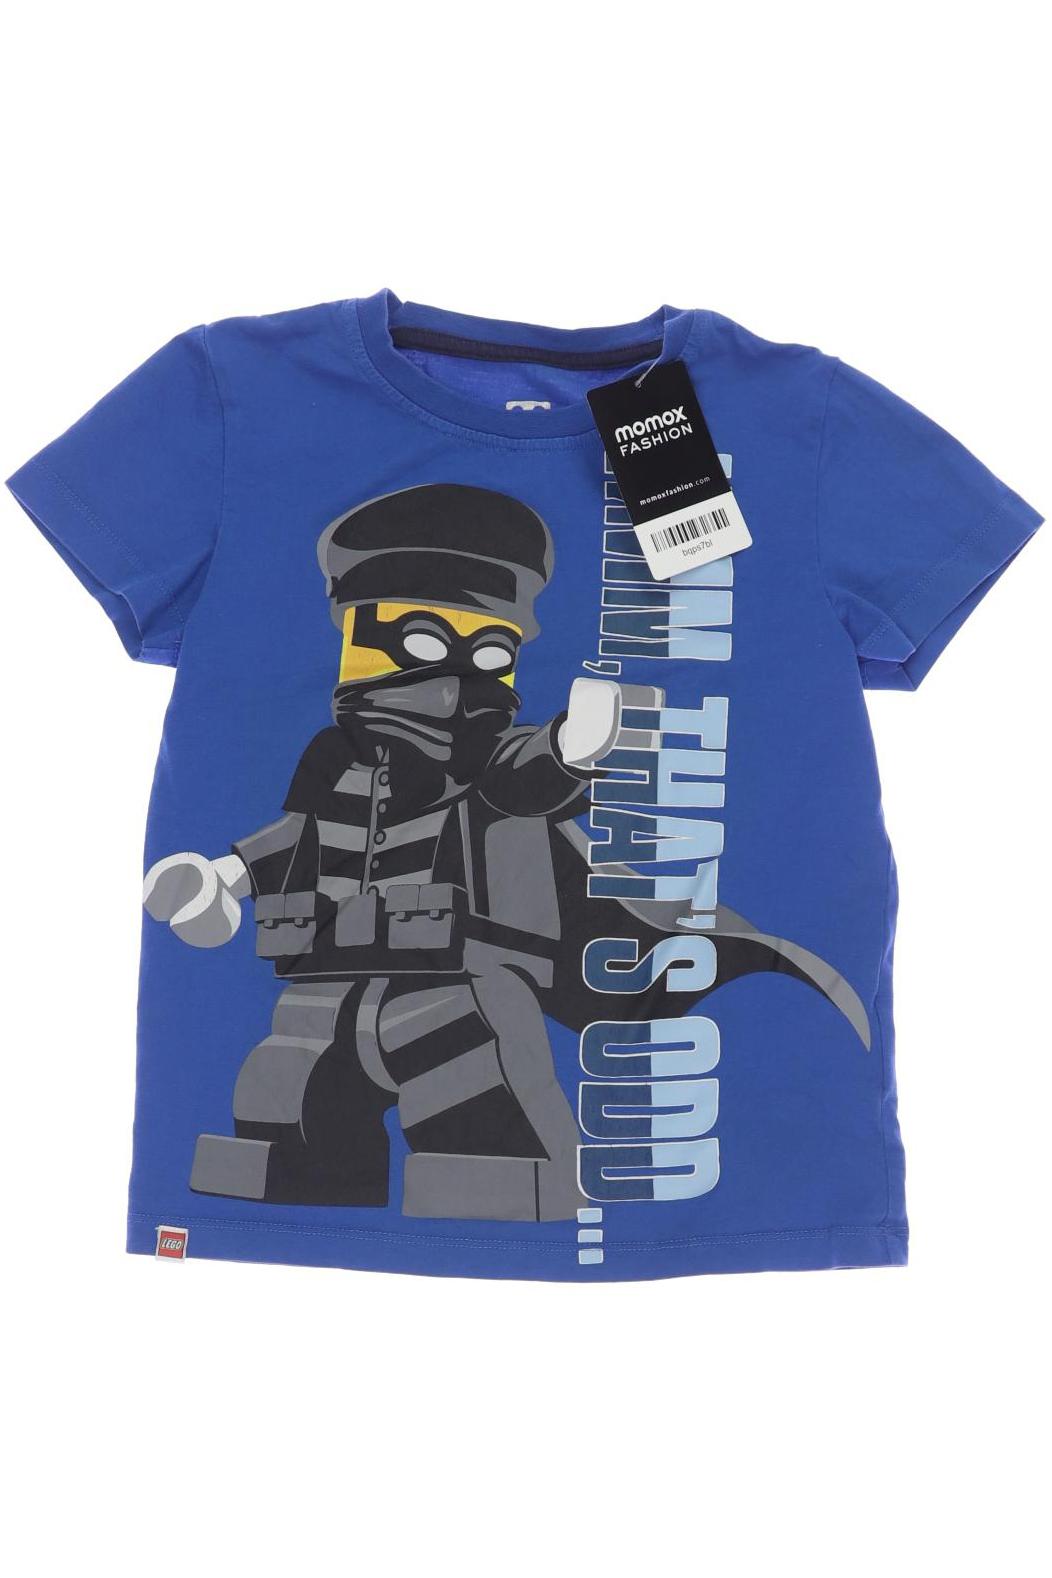 Lego Wear Herren T-Shirt, blau, Gr. 116 von lego wear